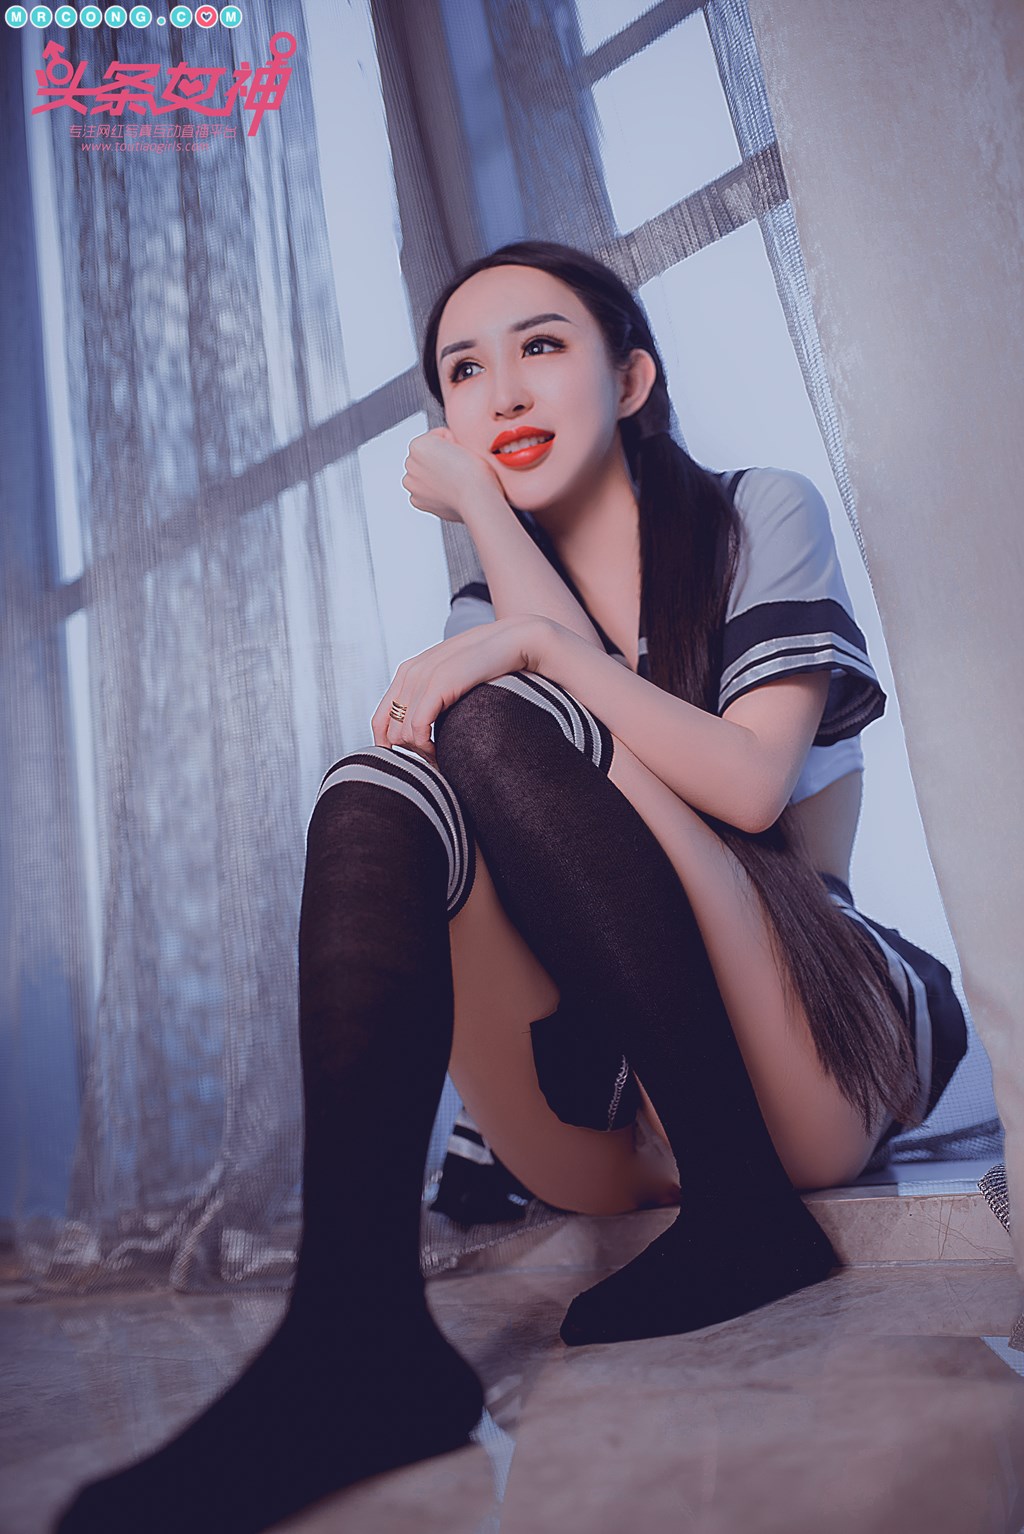 TouTiao 2018-05-13: Model Li Si Tong (李思彤) (21 photos) photo 1-11